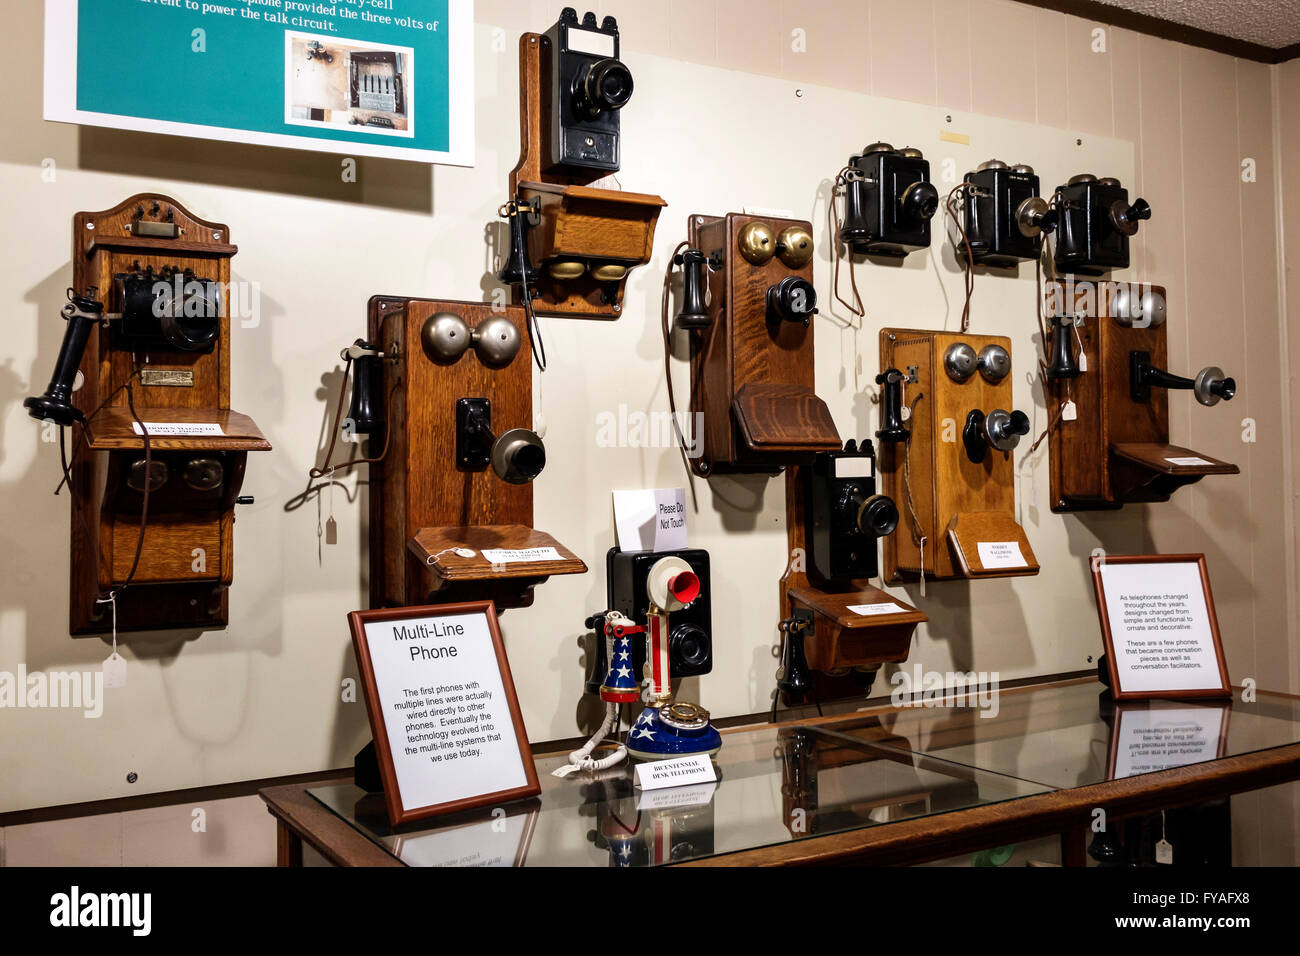 Orlando Florida, Maitland, Maitland Historical Telephone Museum, Inneneinrichtung, Ausstellungsausstellung, Sammlung von Telefonen, FL160402033 Stockfoto